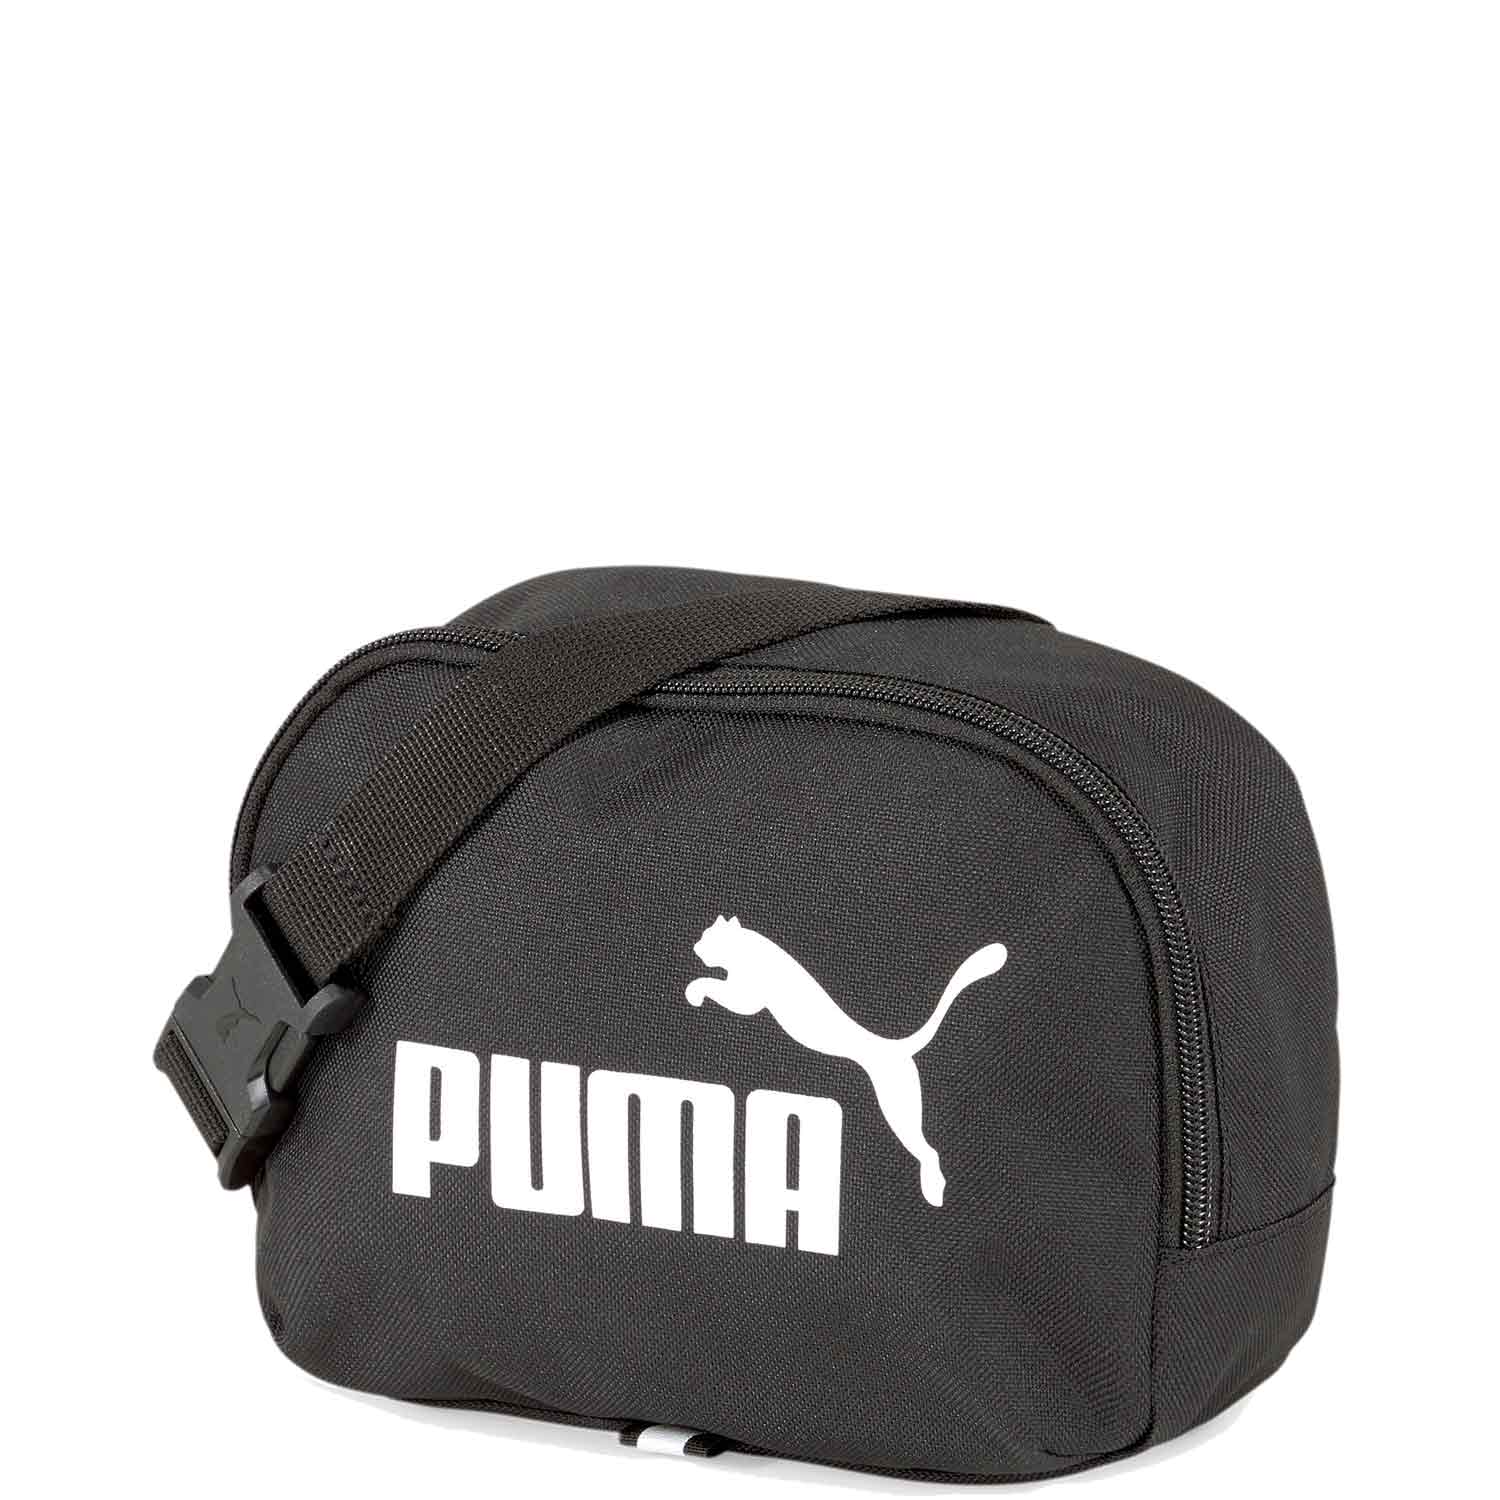 Puma Gürteltasche Phase puma black